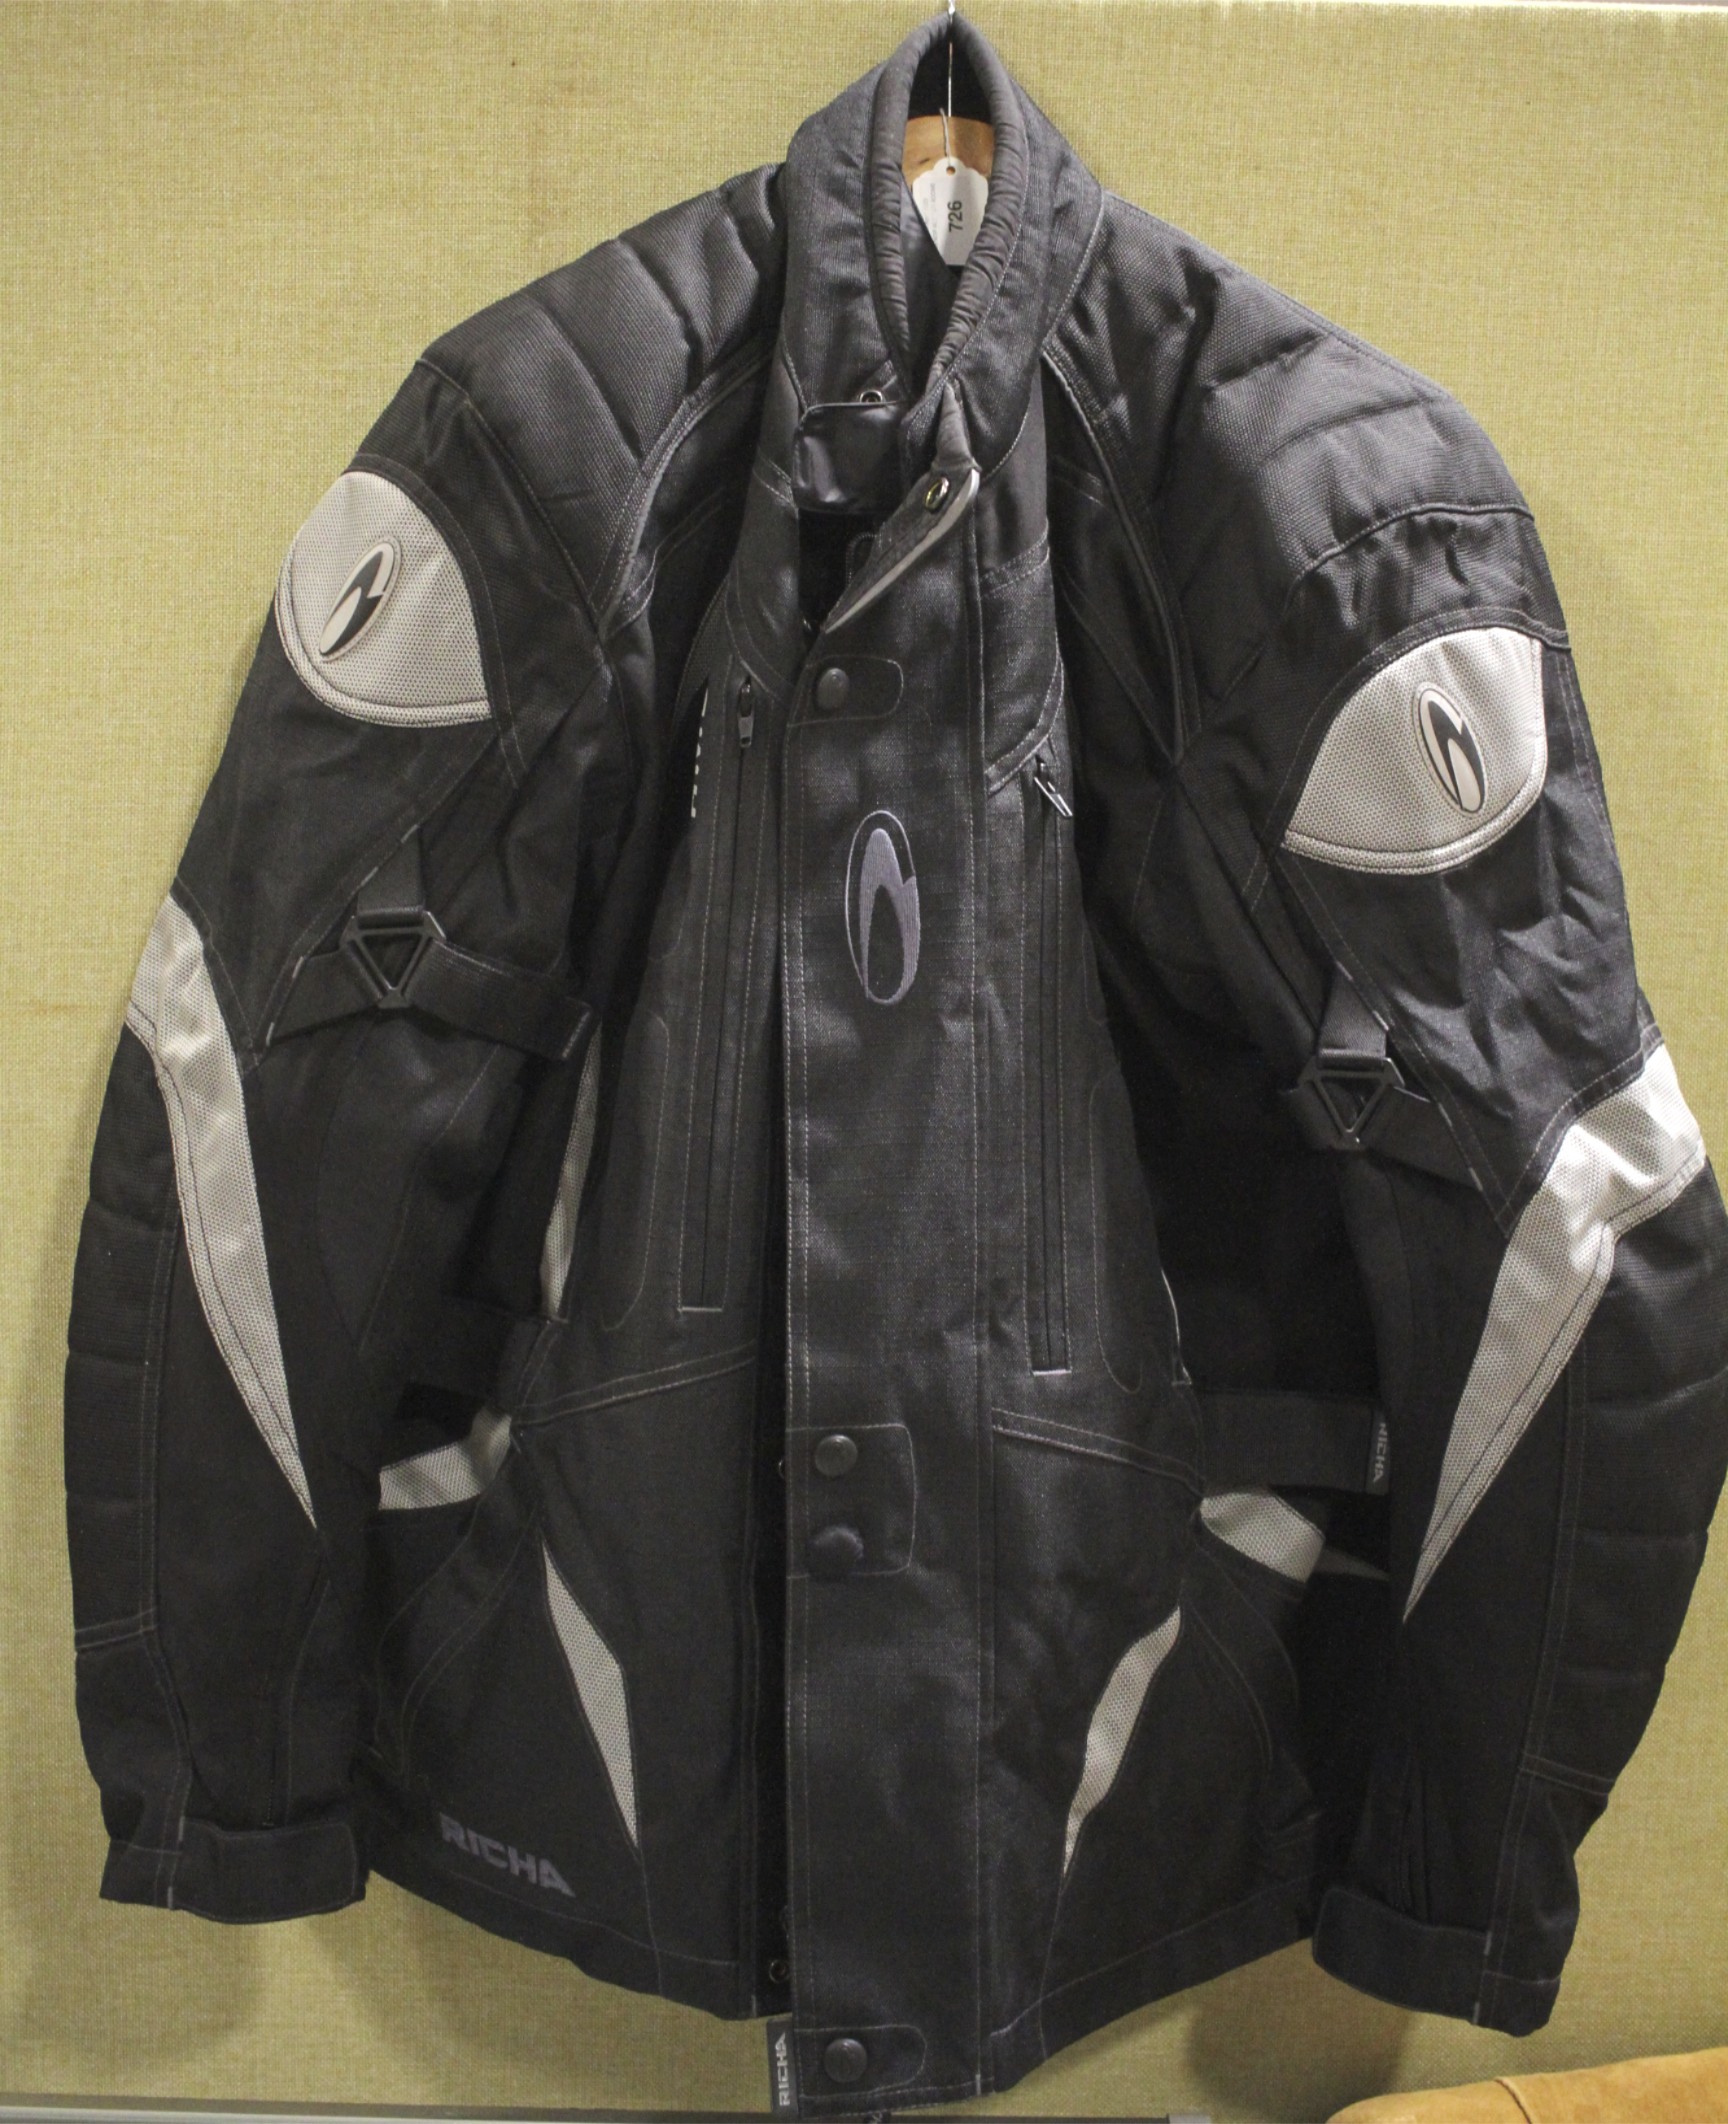 A Richa motorcycle jacket. Model 'Albatr